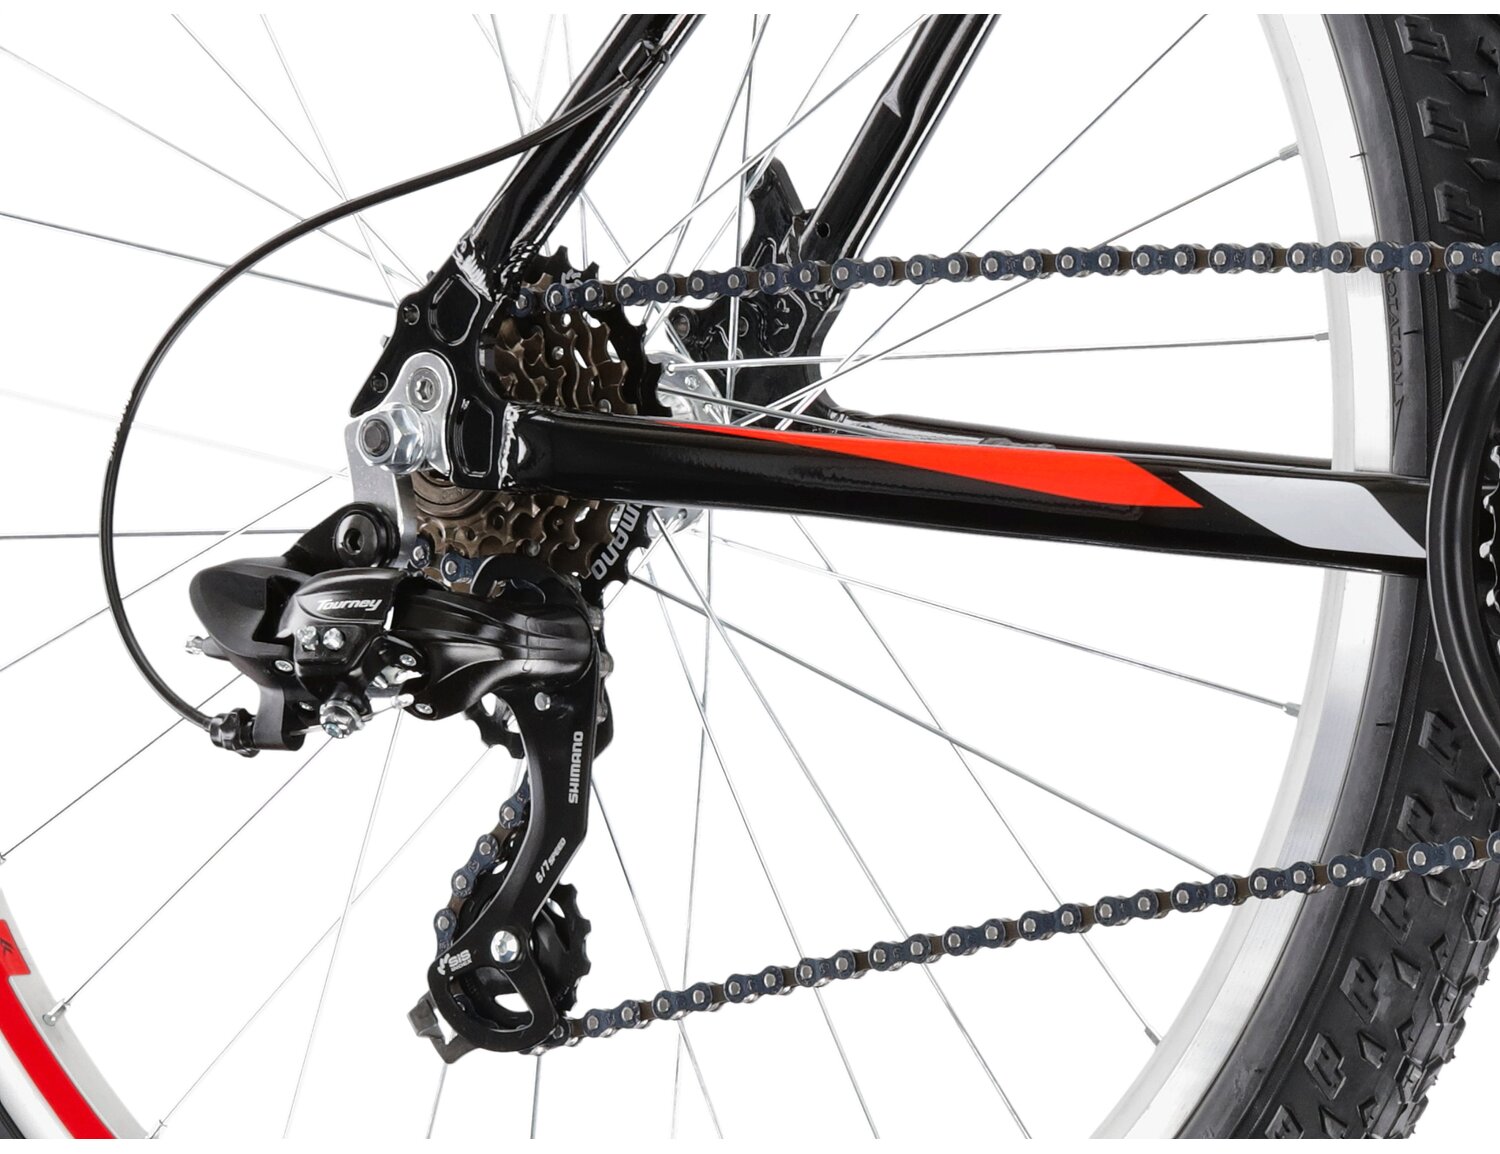  Tylna sześciobiegowa przerzutka Shimano Tourney TY300 oraz hamulce v-brake w rowerze górskim MTB KROSS Hexagon 